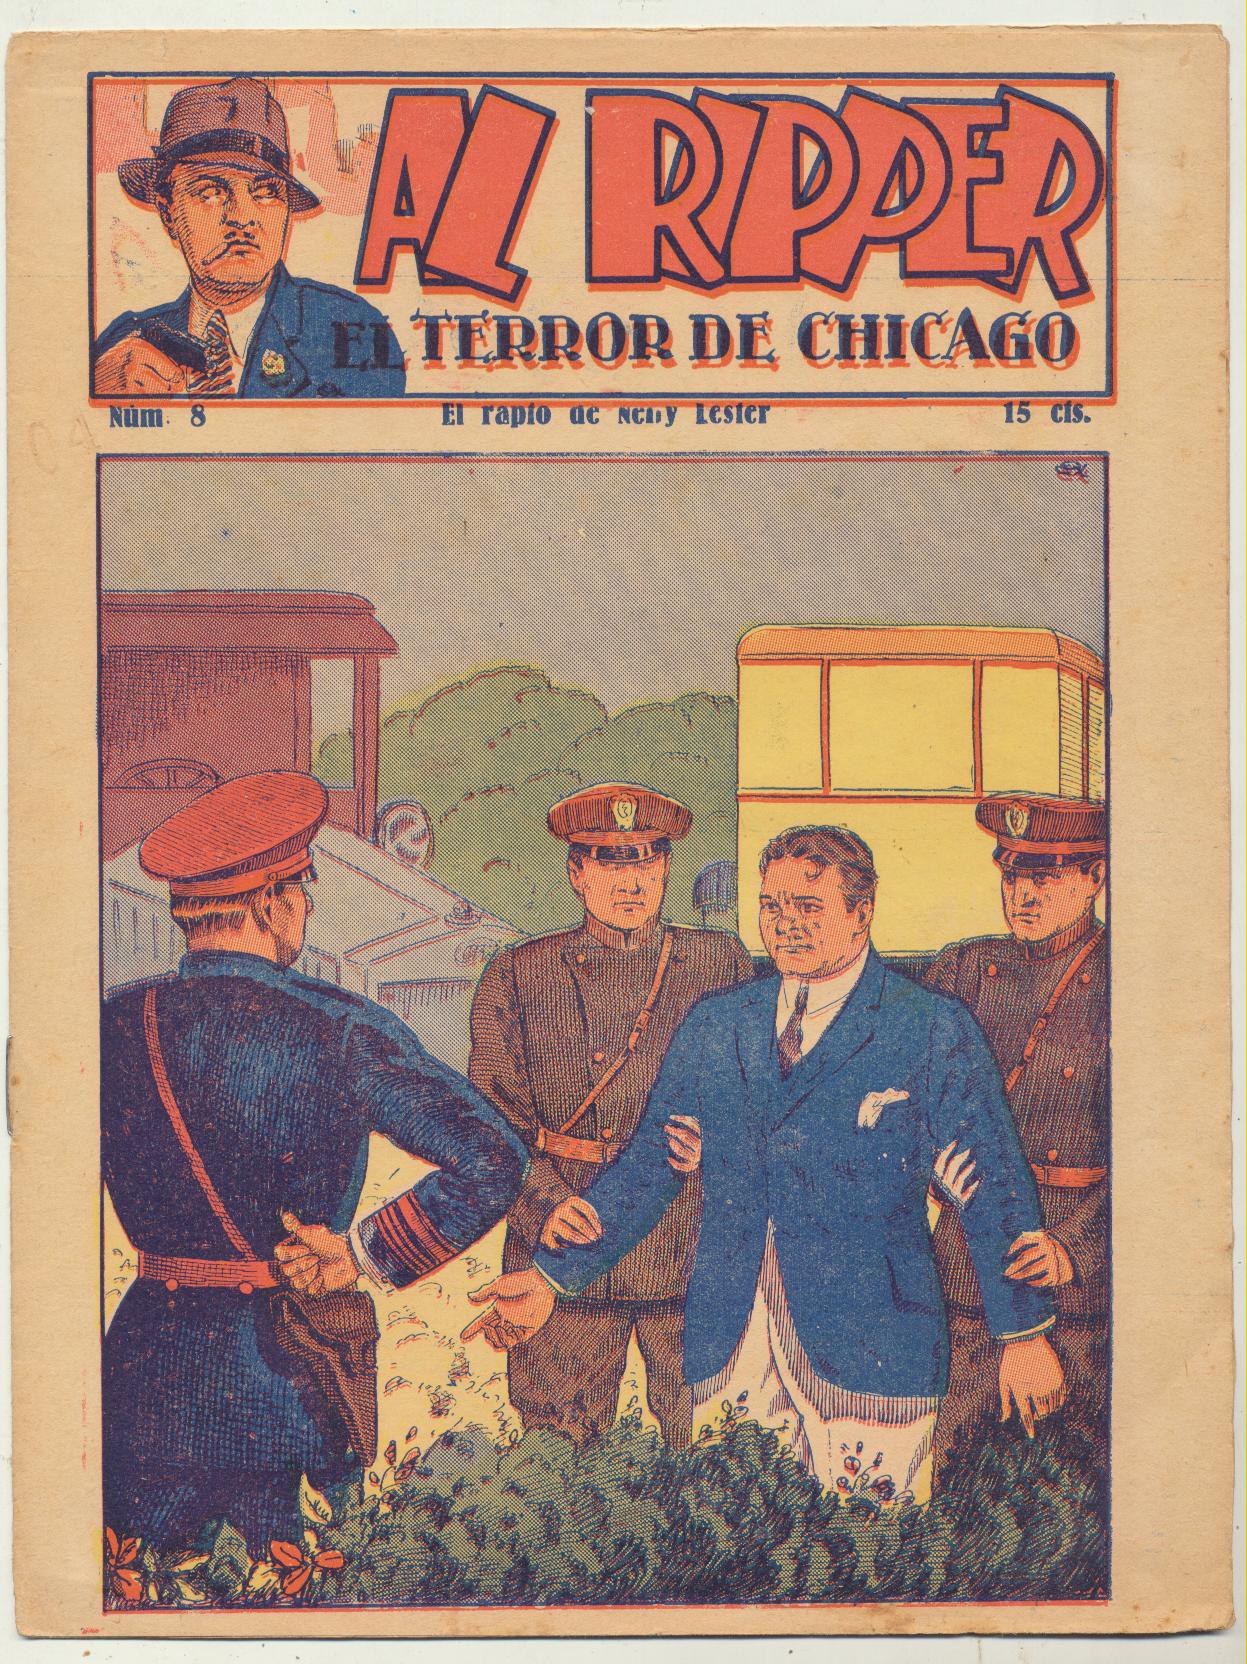 Al Ripper, El terror de Chicago nº 8. Editorial Sanxo años 20